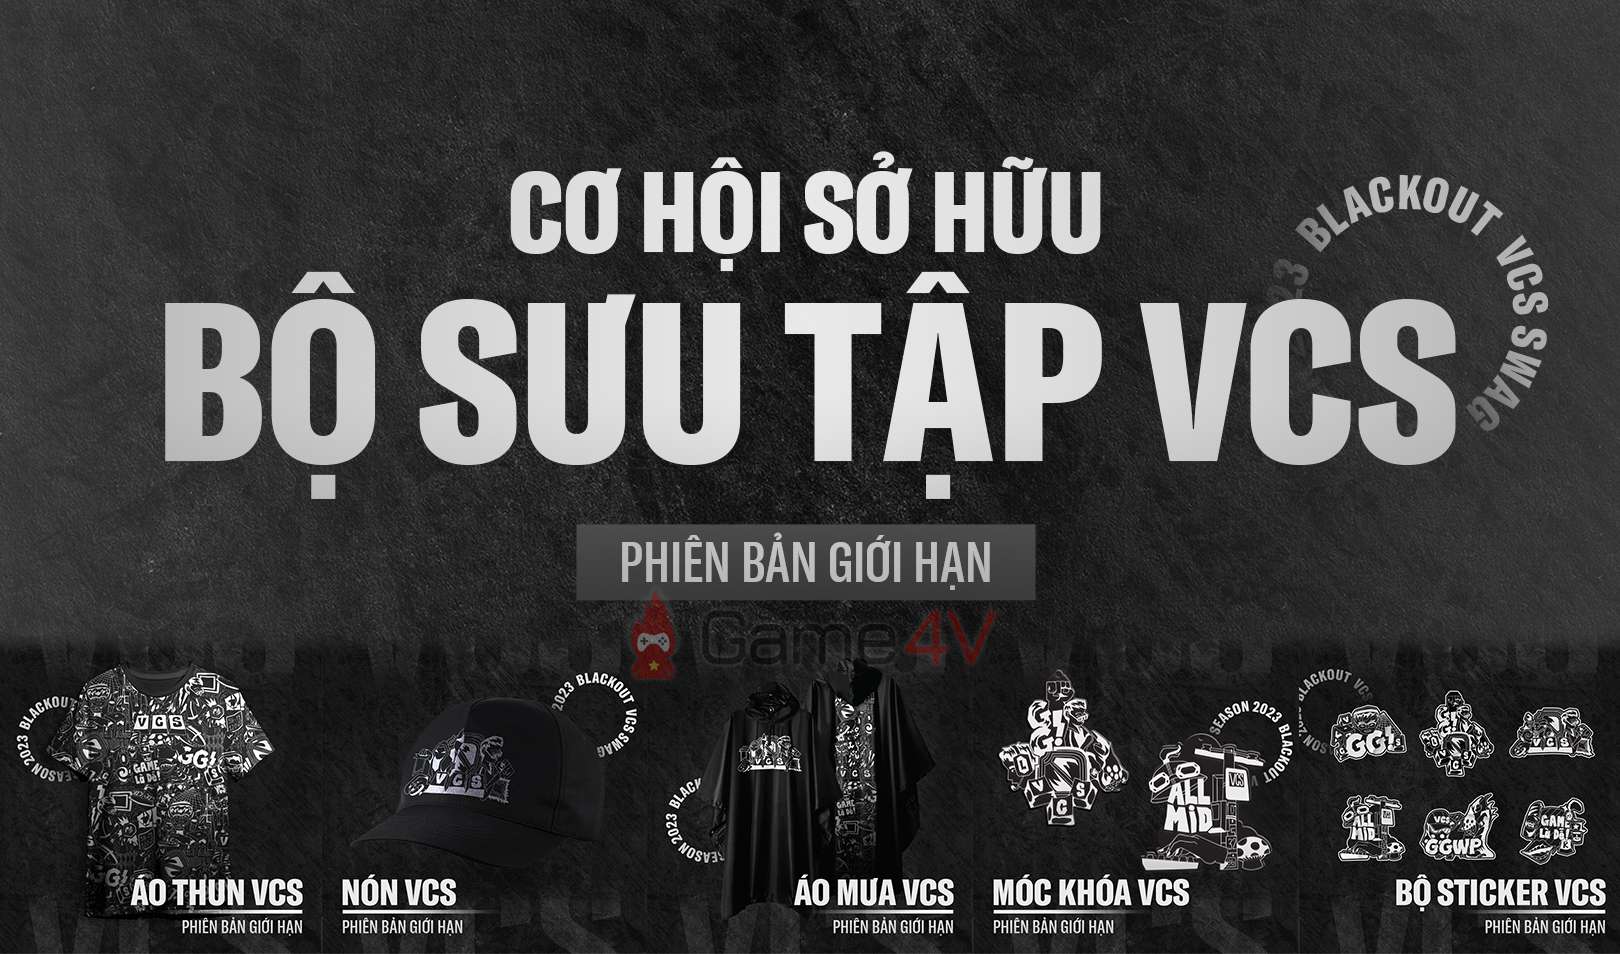 Đây là BST VCS đầu tiên mà Riot Games ra mắt cho khu vực Việt Nam kể từ ngày lấy lại LMHT.